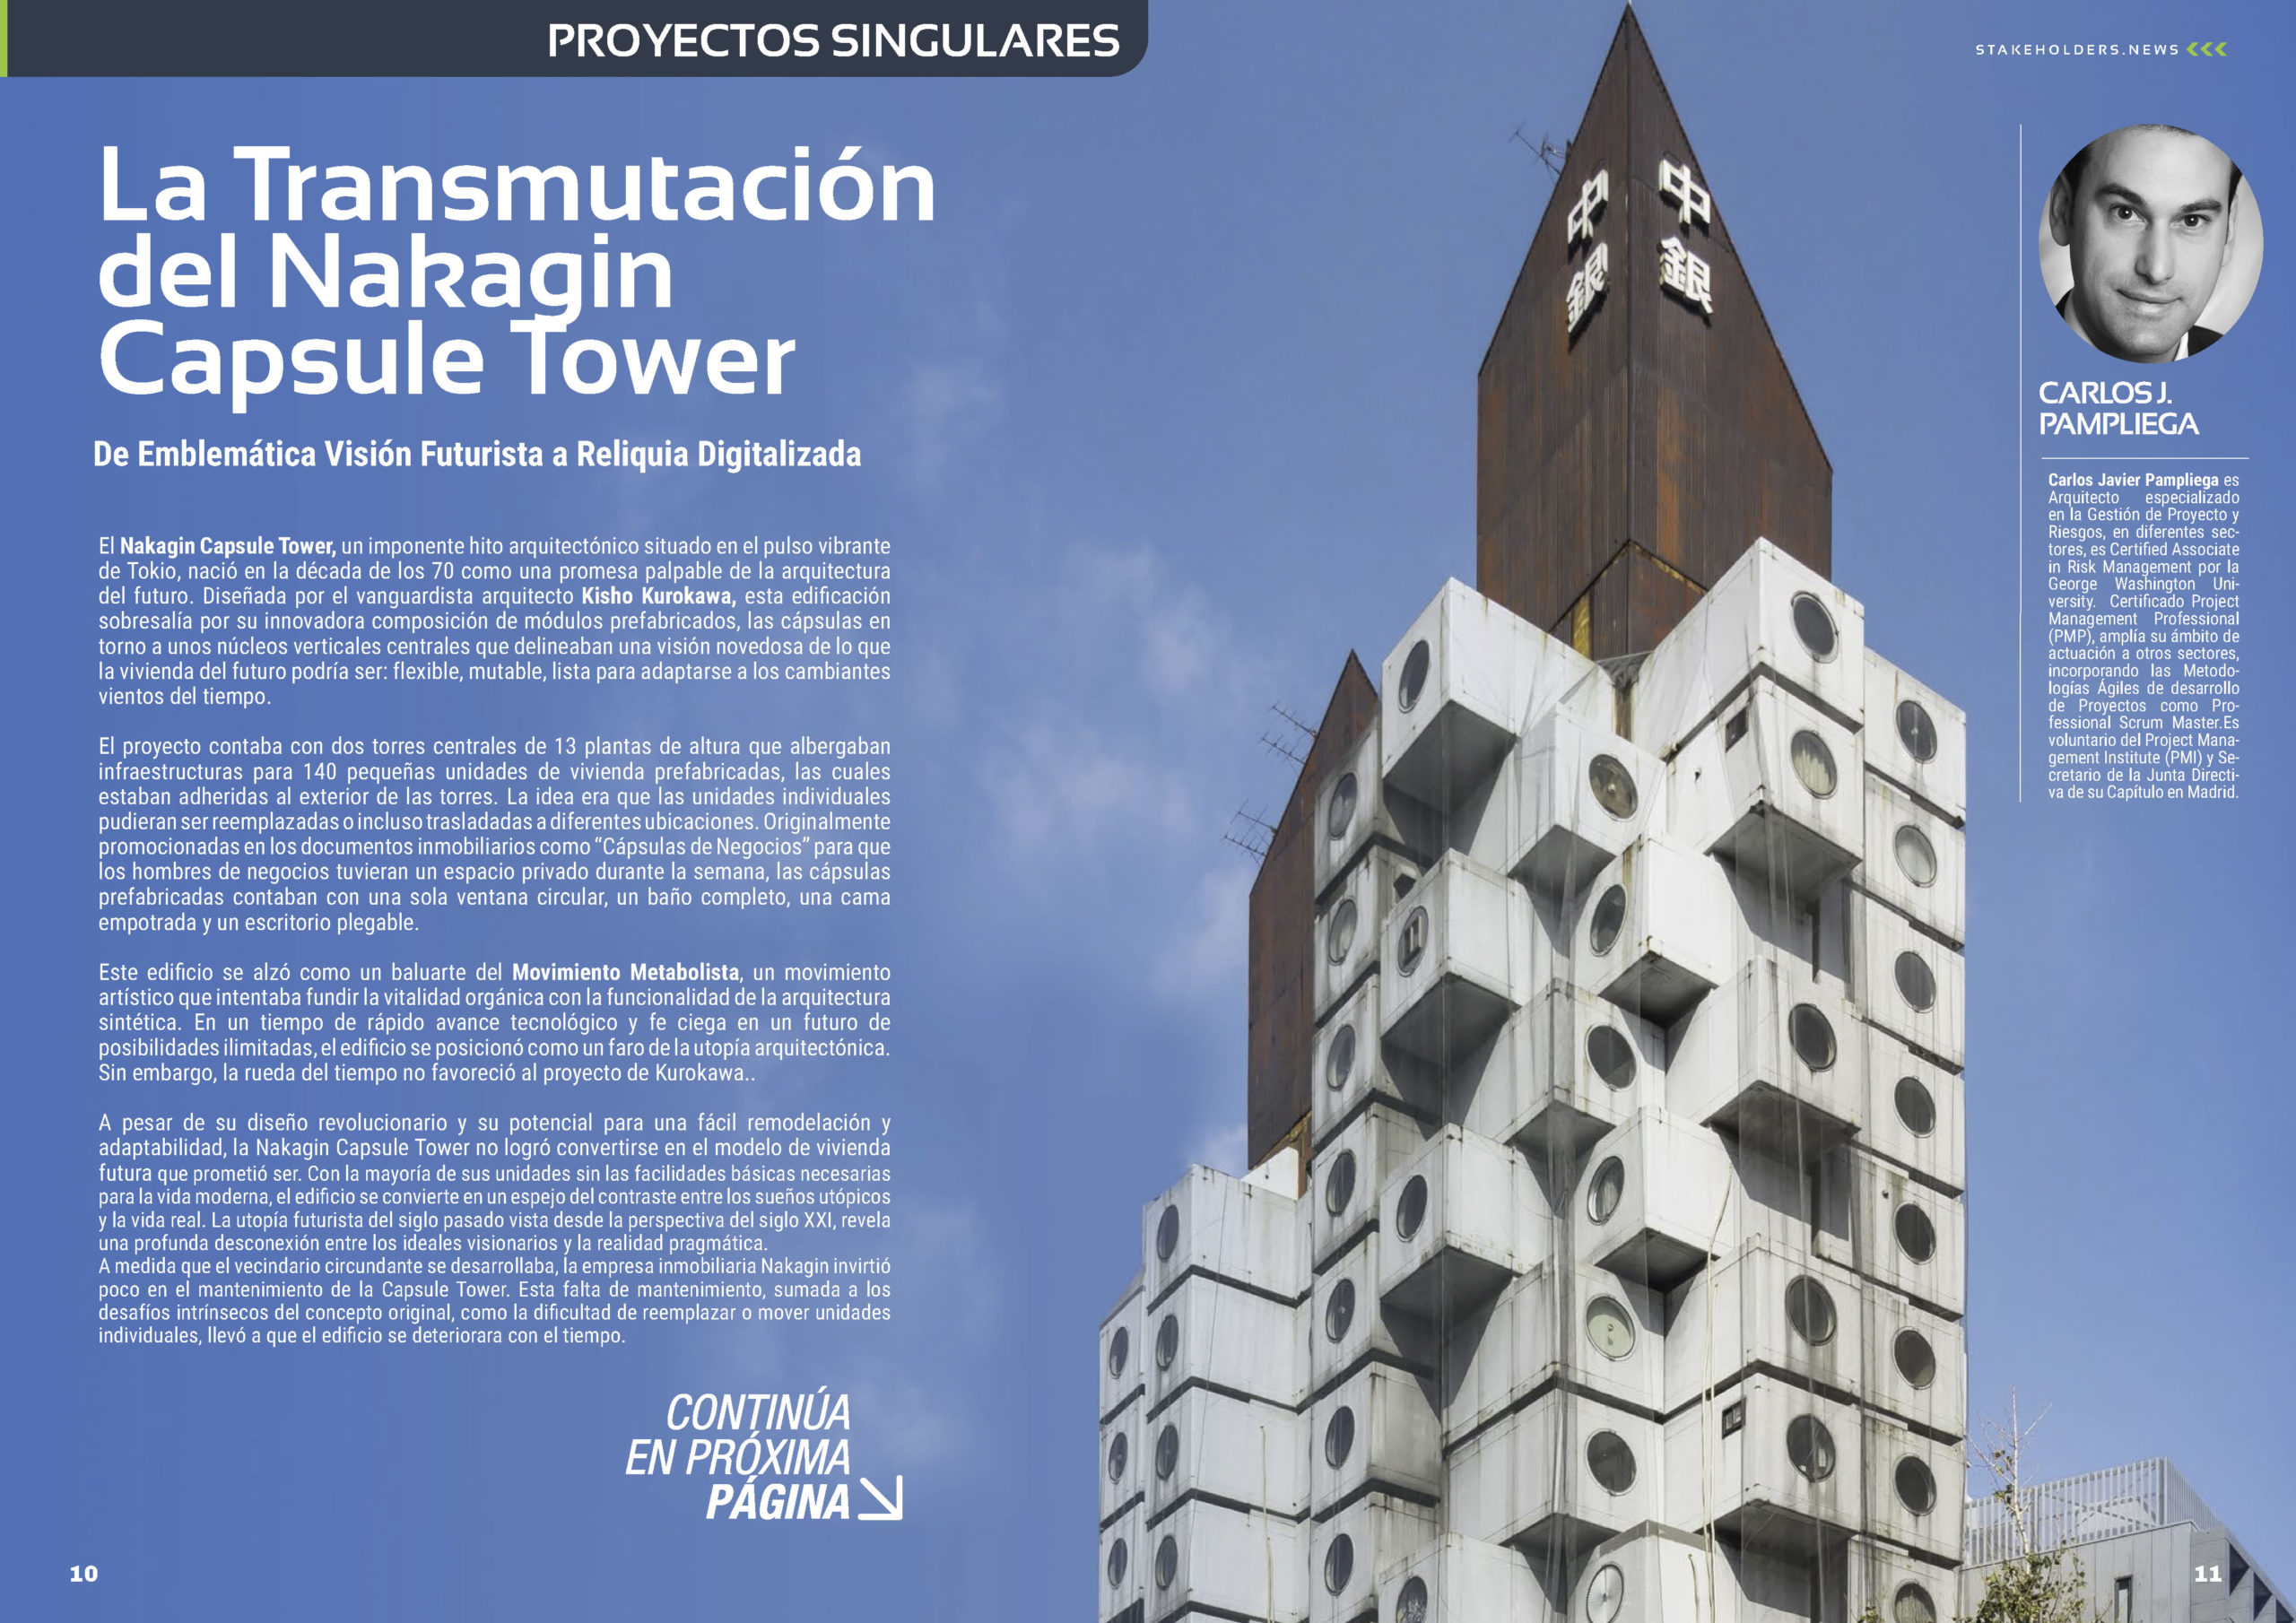 Revista Mensual Stakeholders.news ST19 de julio de 2023 con Jose Antonio Puentes